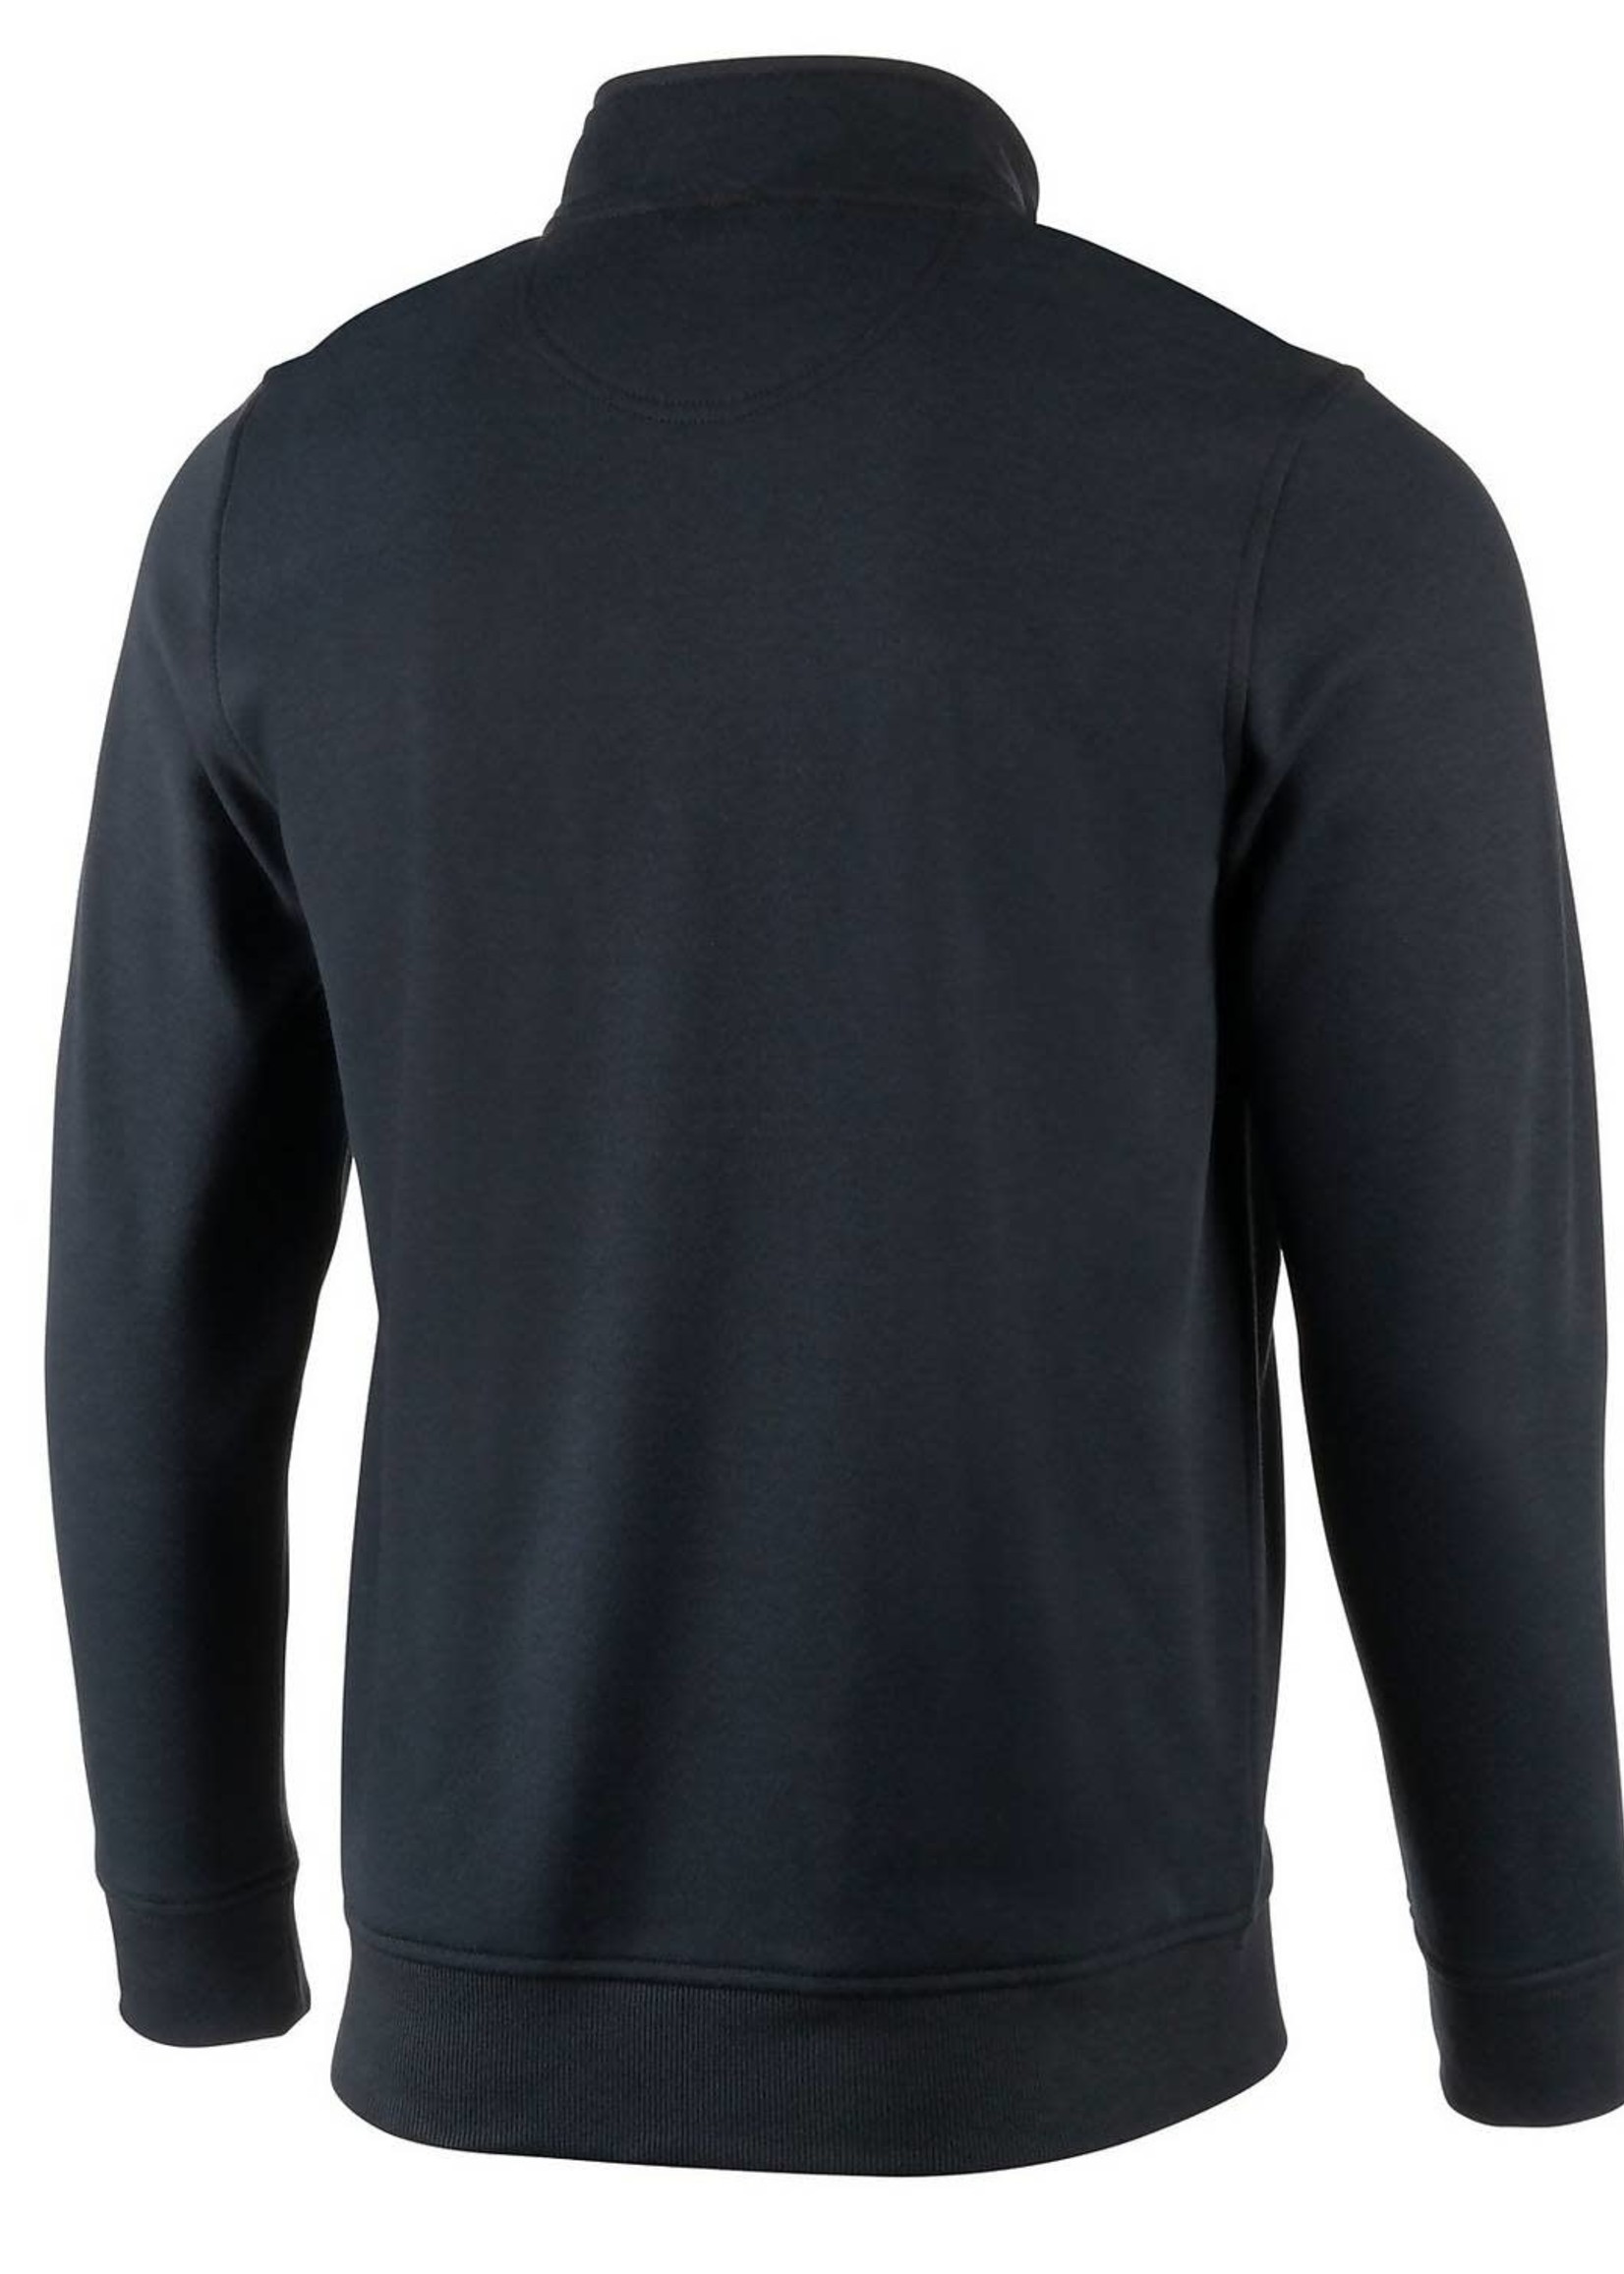 1/4 Zip Fleece Sweatshirt 001 Black